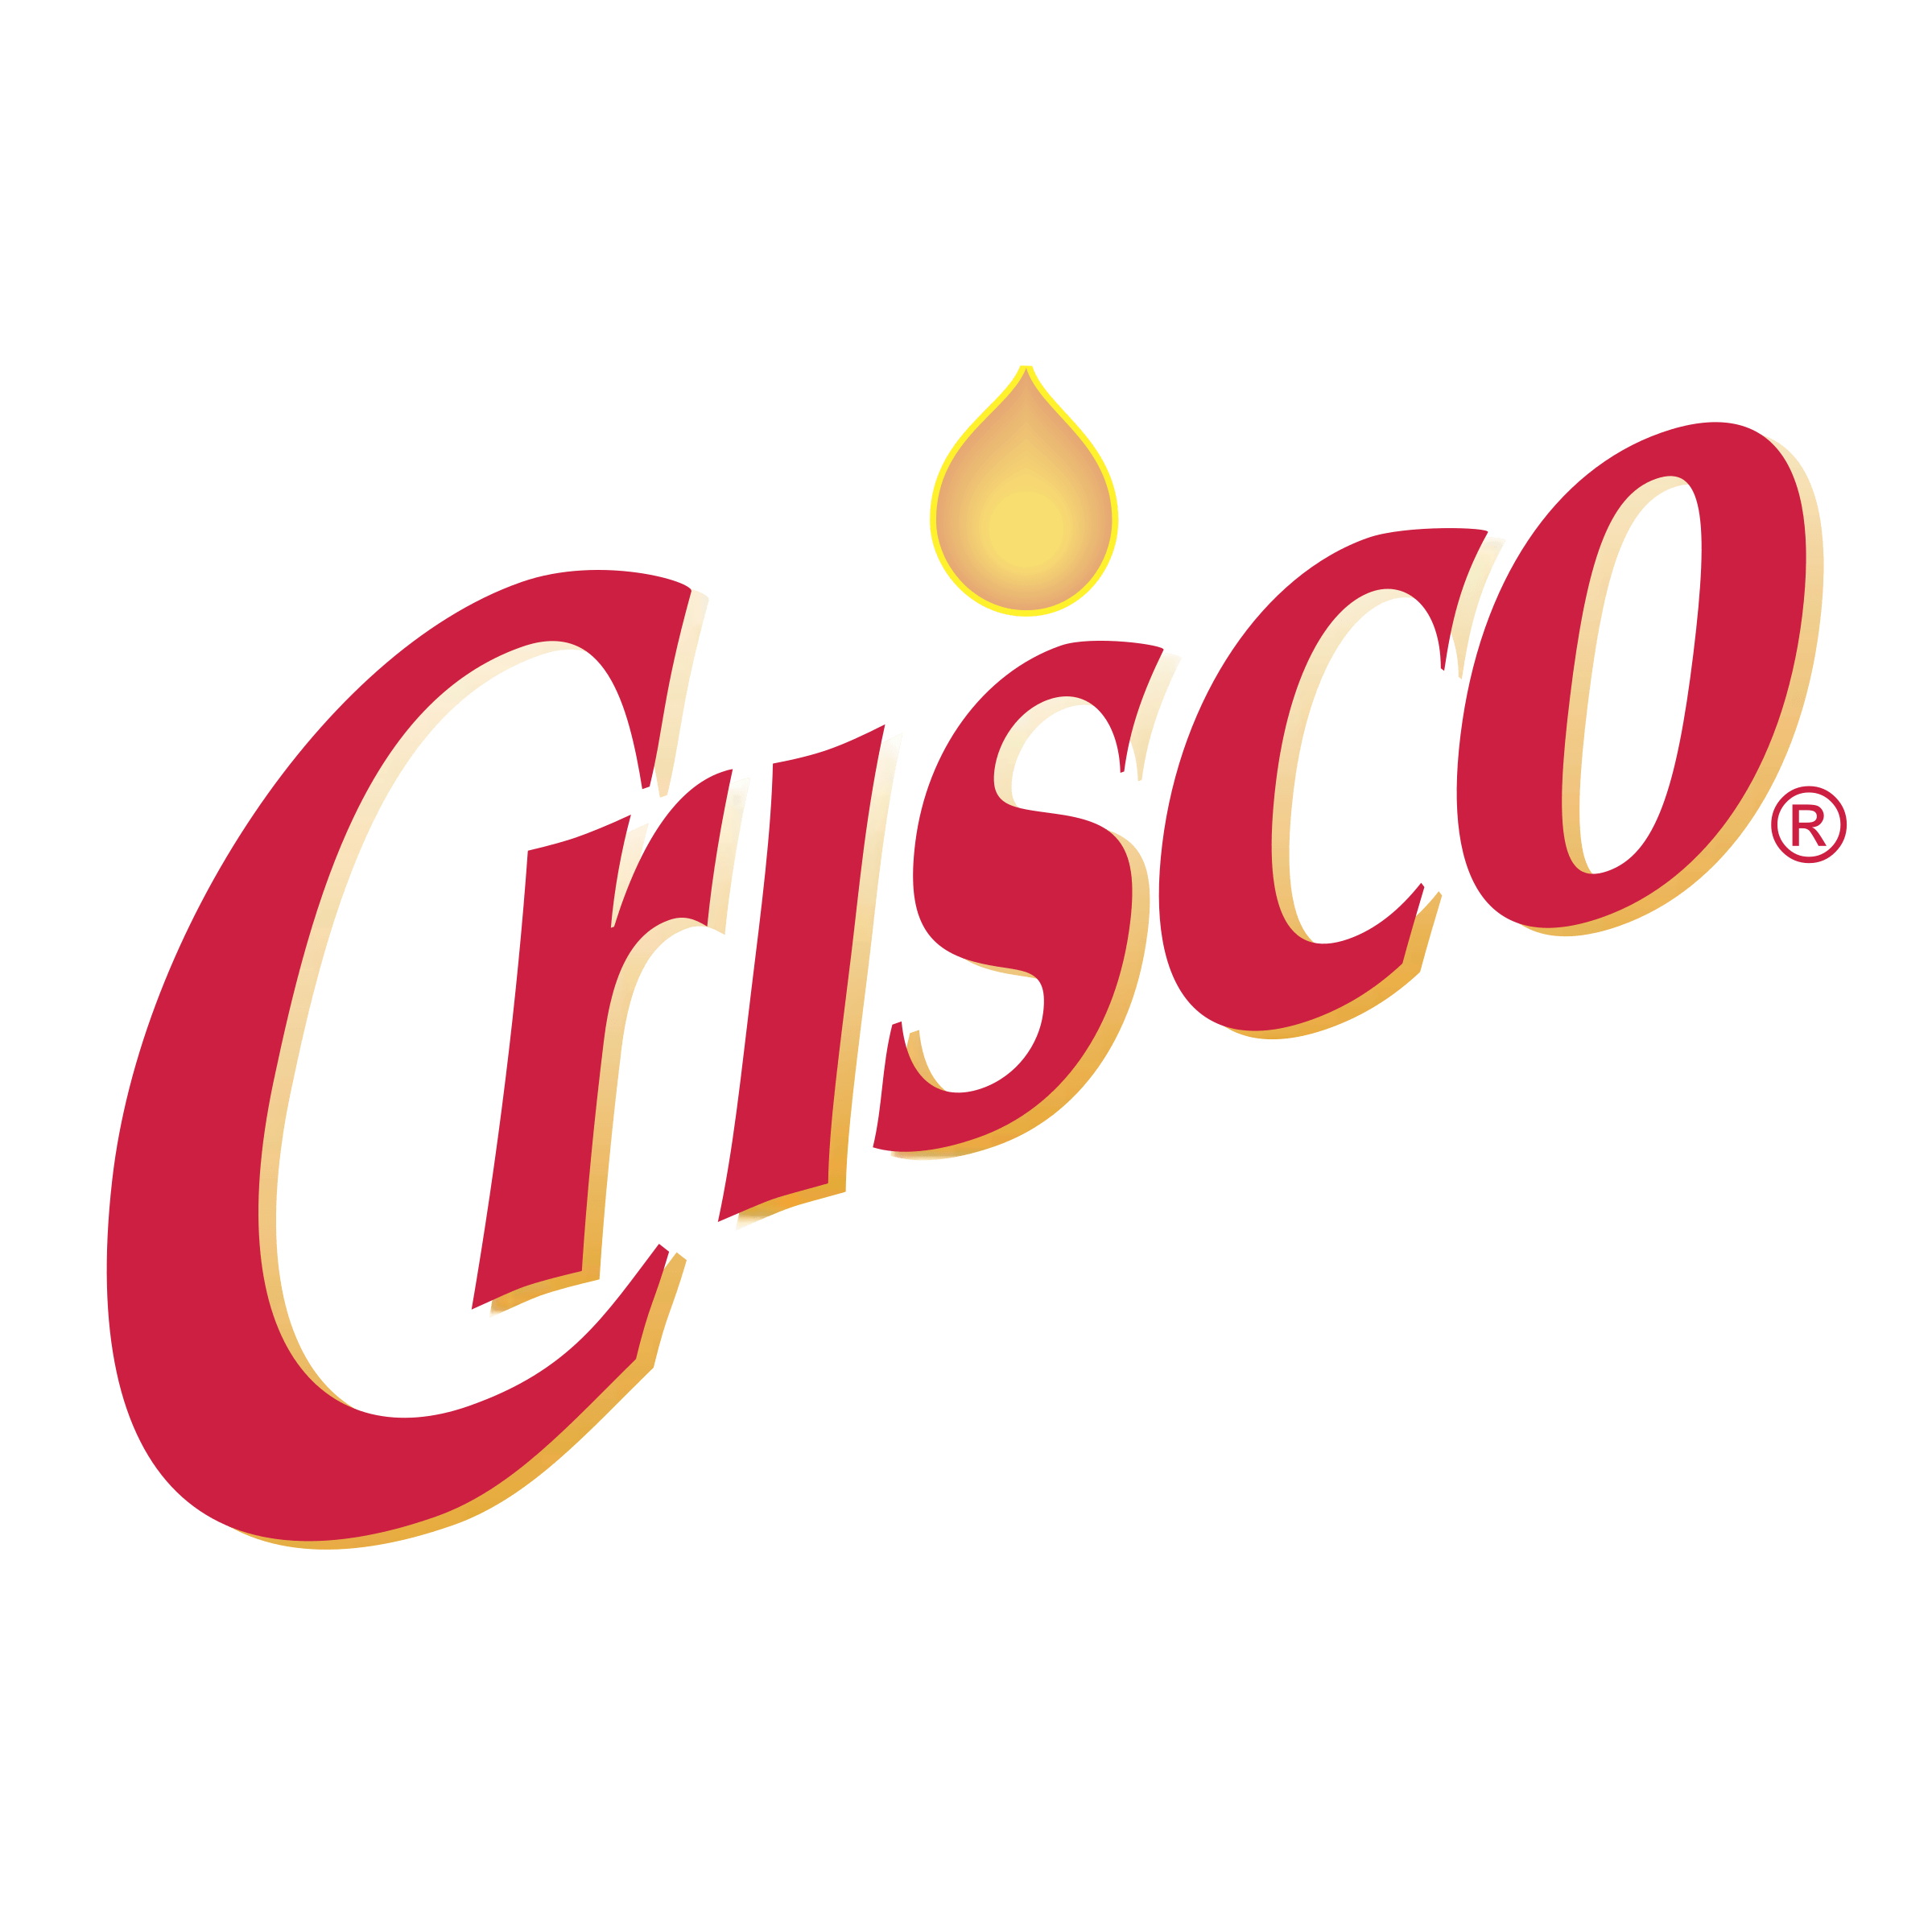 Crisco Logo - Crisco Logo PNG Transparent & SVG Vector - Freebie Supply